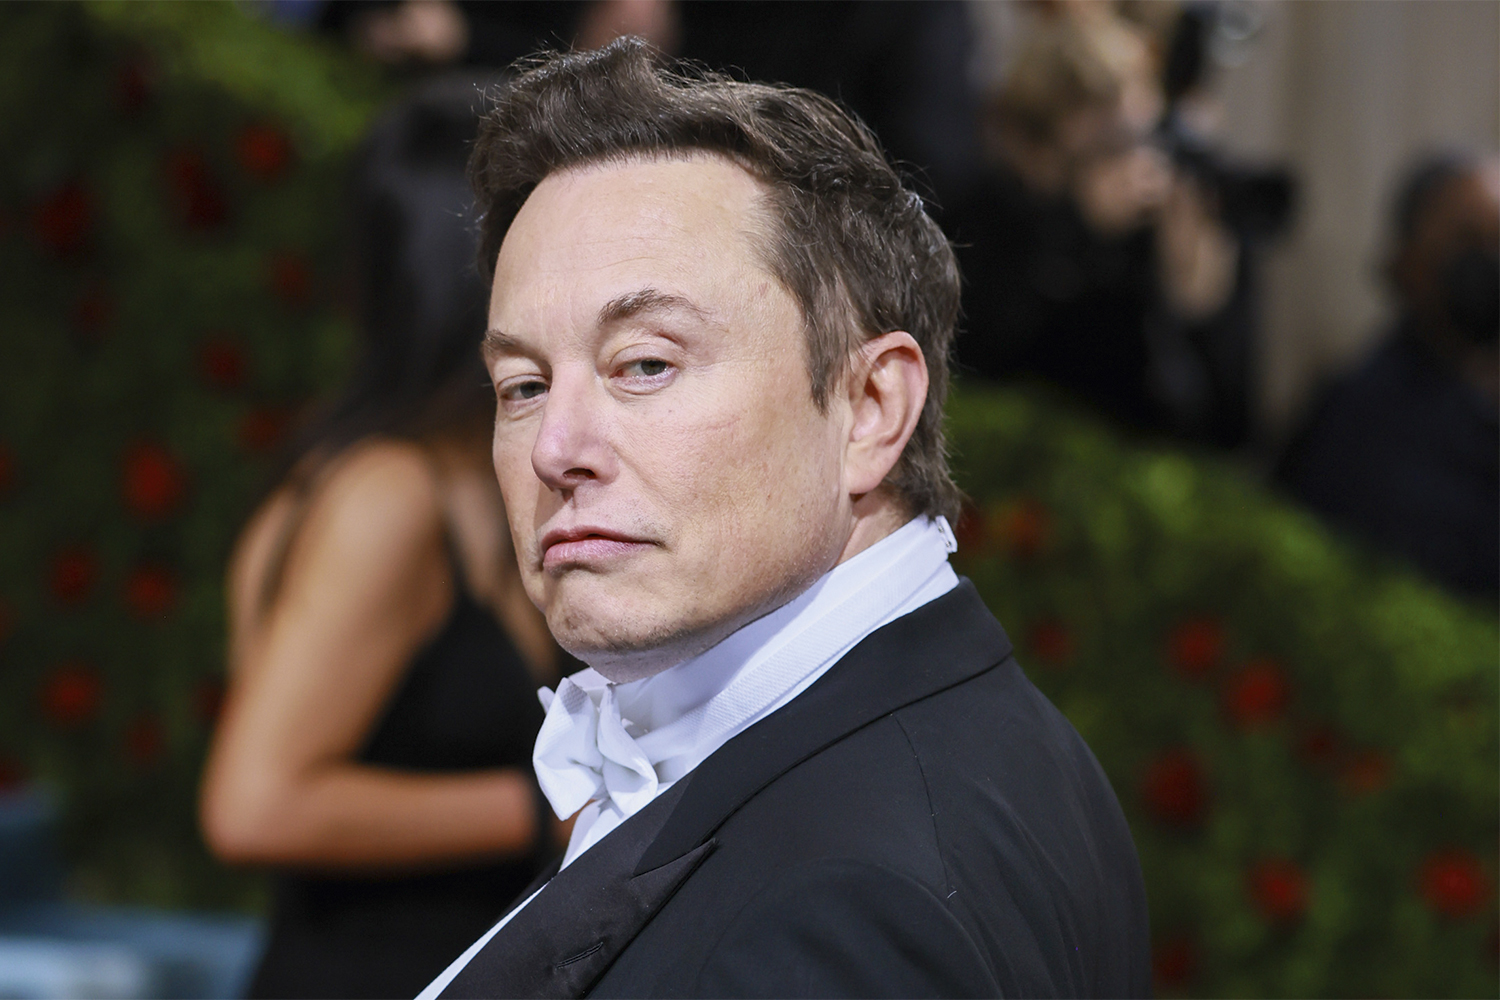 SEM CONVERSA - O bilionário Elon Musk: por e-mail, exigiu o retorno de seus 100 000 empregados -